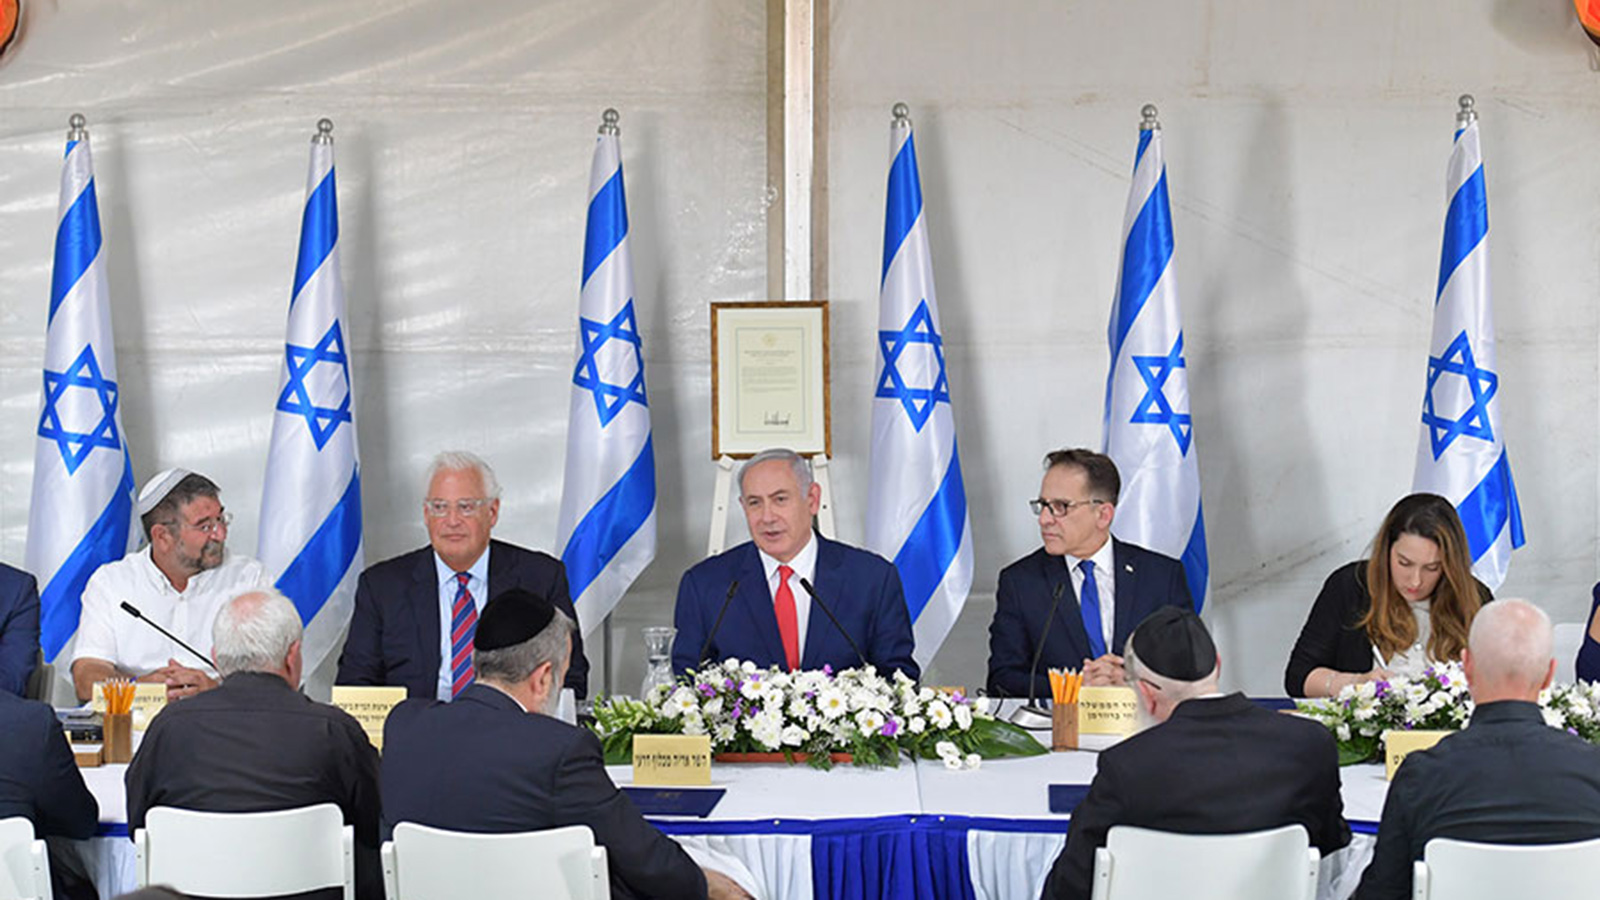 جلسة الحكومة الإسرائيلية بالجولان المحتل قبيل وضع حجر الأساس لمستوطنة 